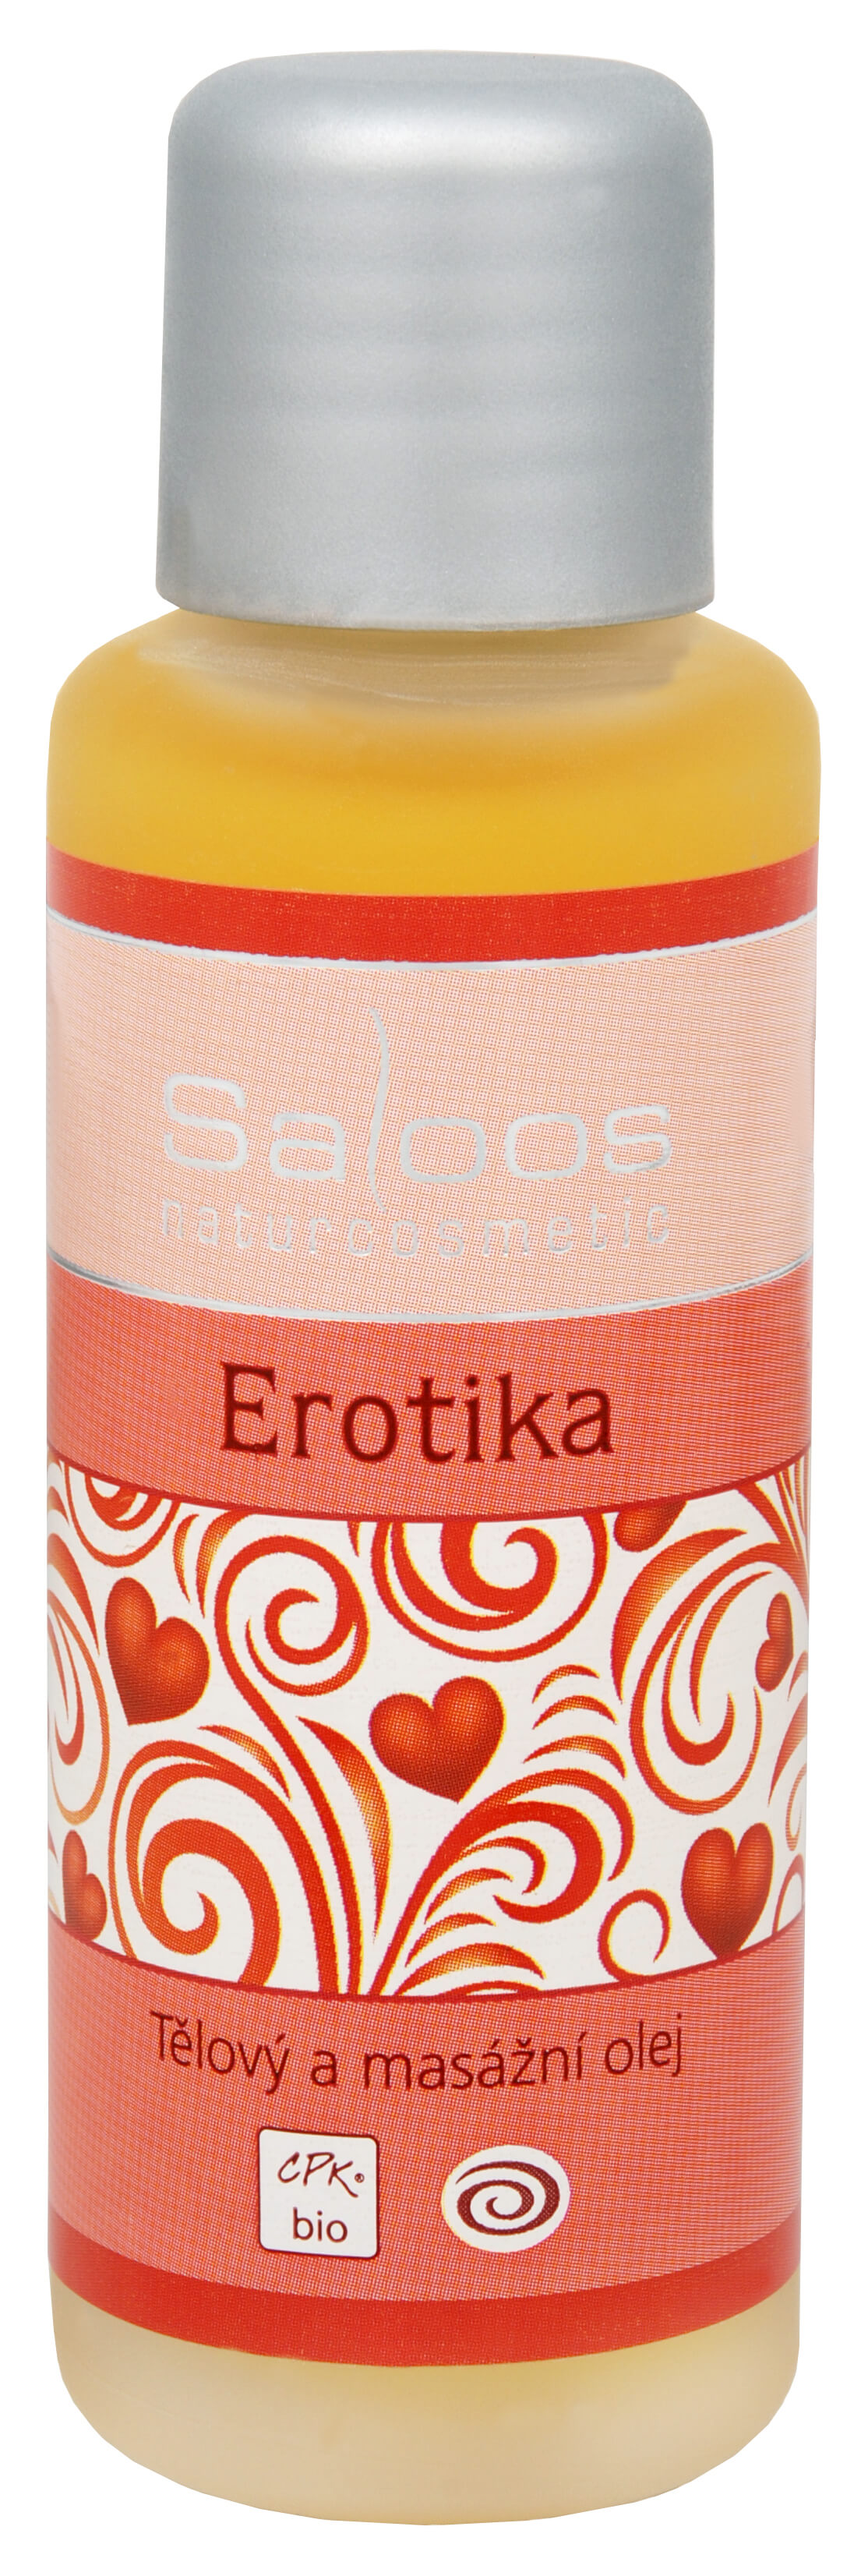 Zobrazit detail výrobku Saloos Bio tělový a masážní olej - Erotika 125 ml + 2 měsíce na vrácení zboží